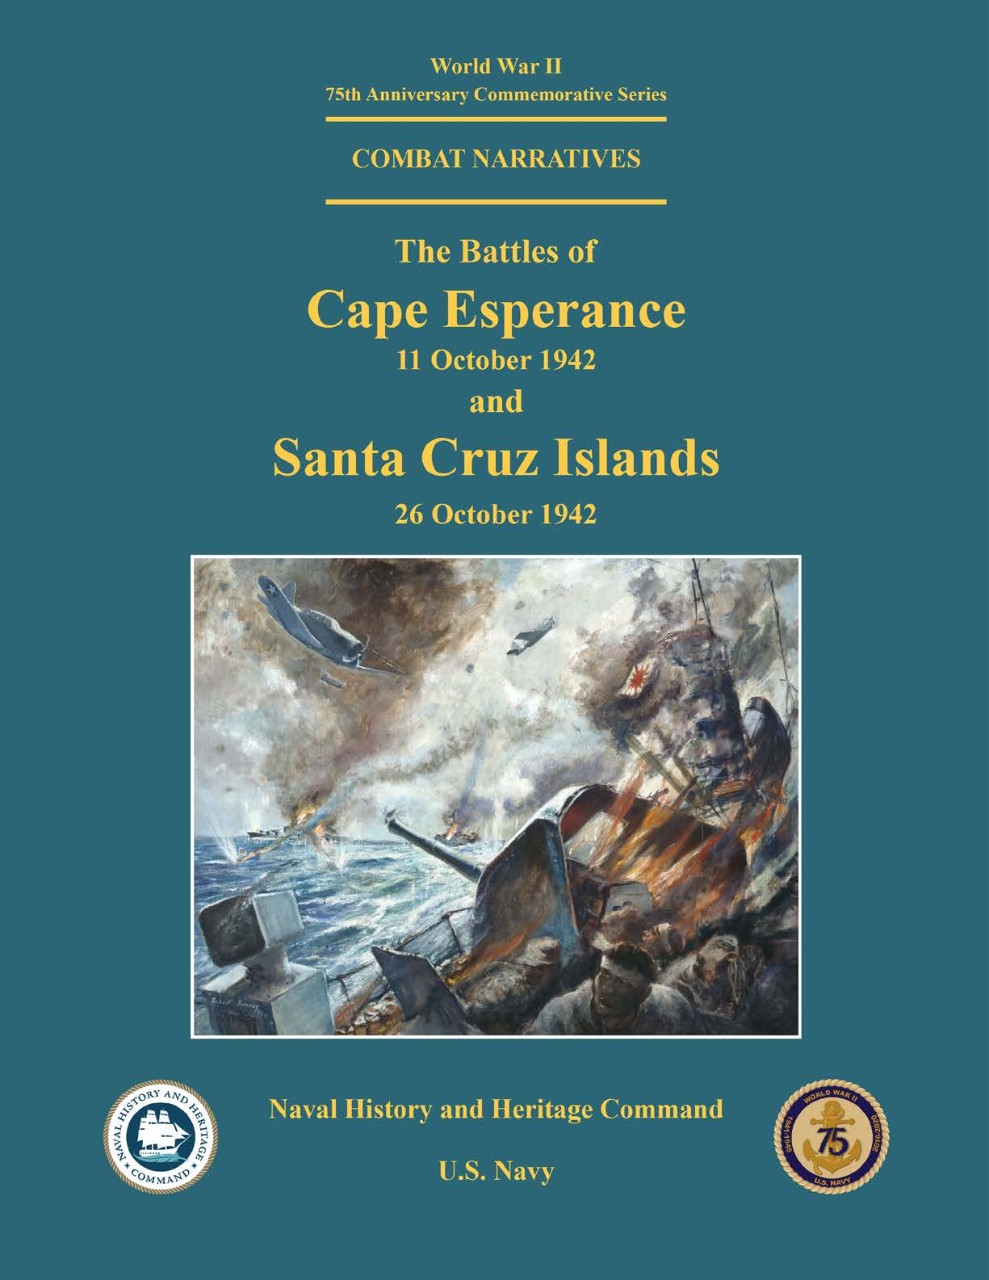 Islands, 26 October 1942 V Battle of Santa Cruz